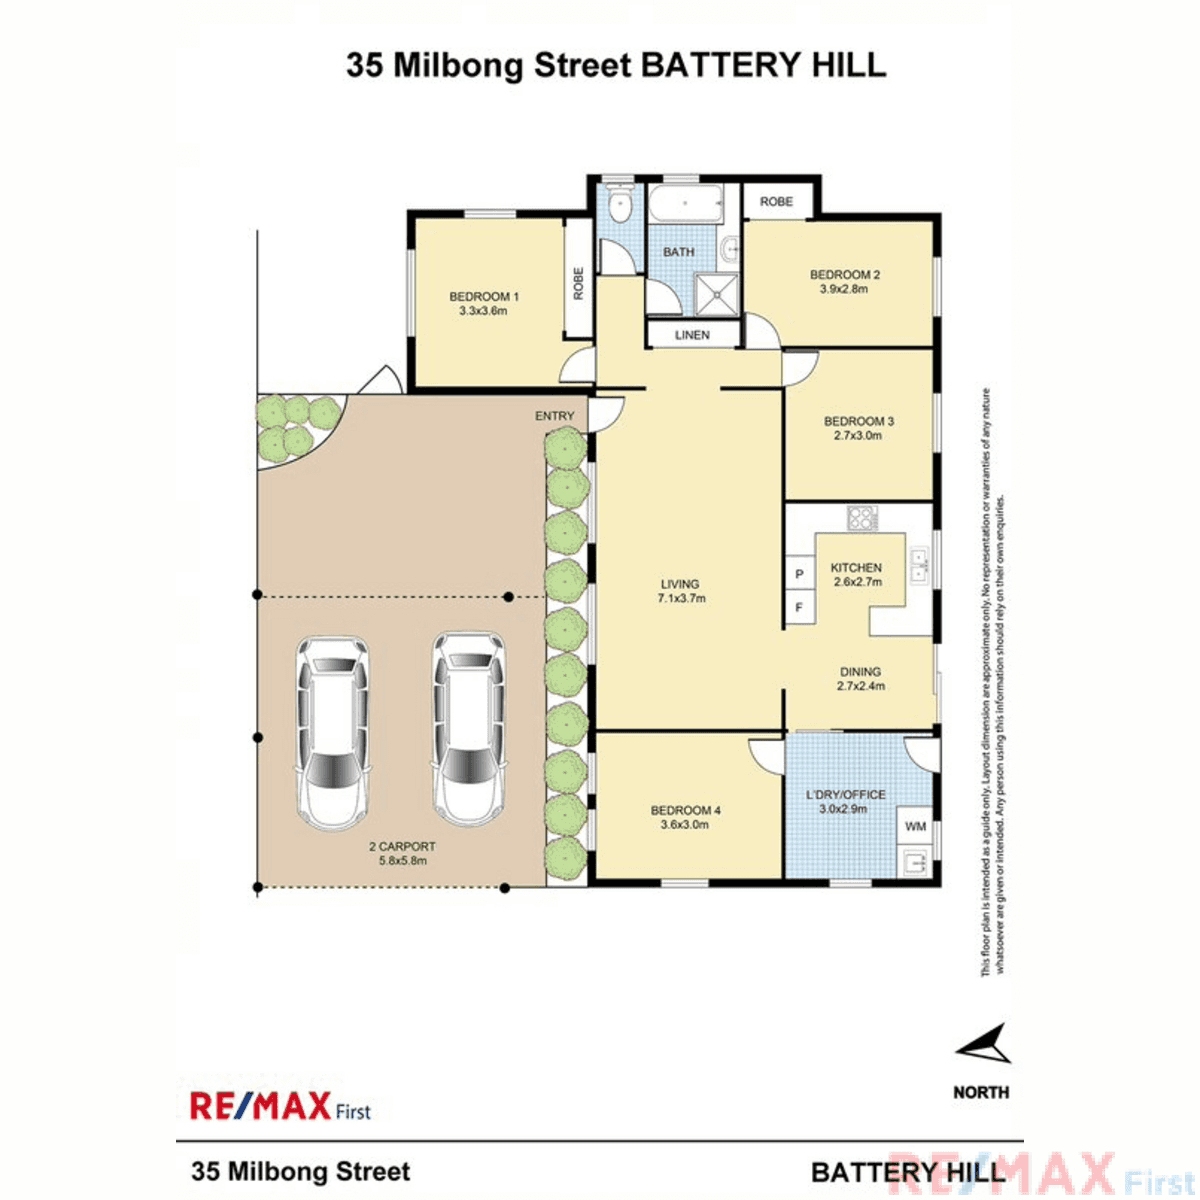 35 Milbong Street, BATTERY HILL, QLD 4551